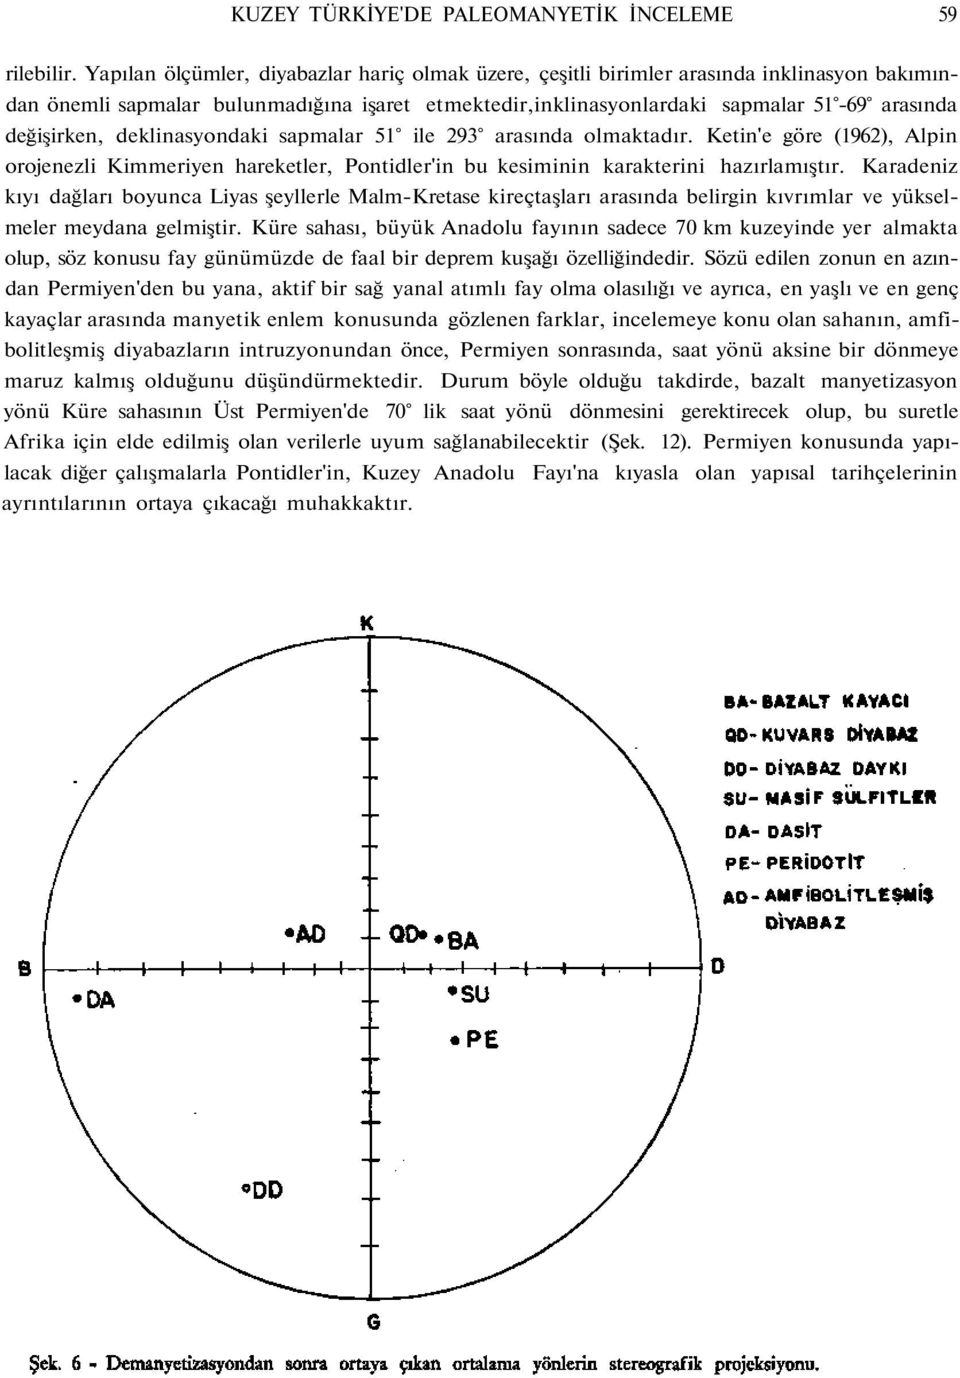 deklinasyondaki sapmalar 51 ile 293 arasında olmaktadır. Ketin'e göre (1962), Alpin orojenezli Kimmeriyen hareketler, Pontidler'in bu kesiminin karakterini hazırlamıştır.